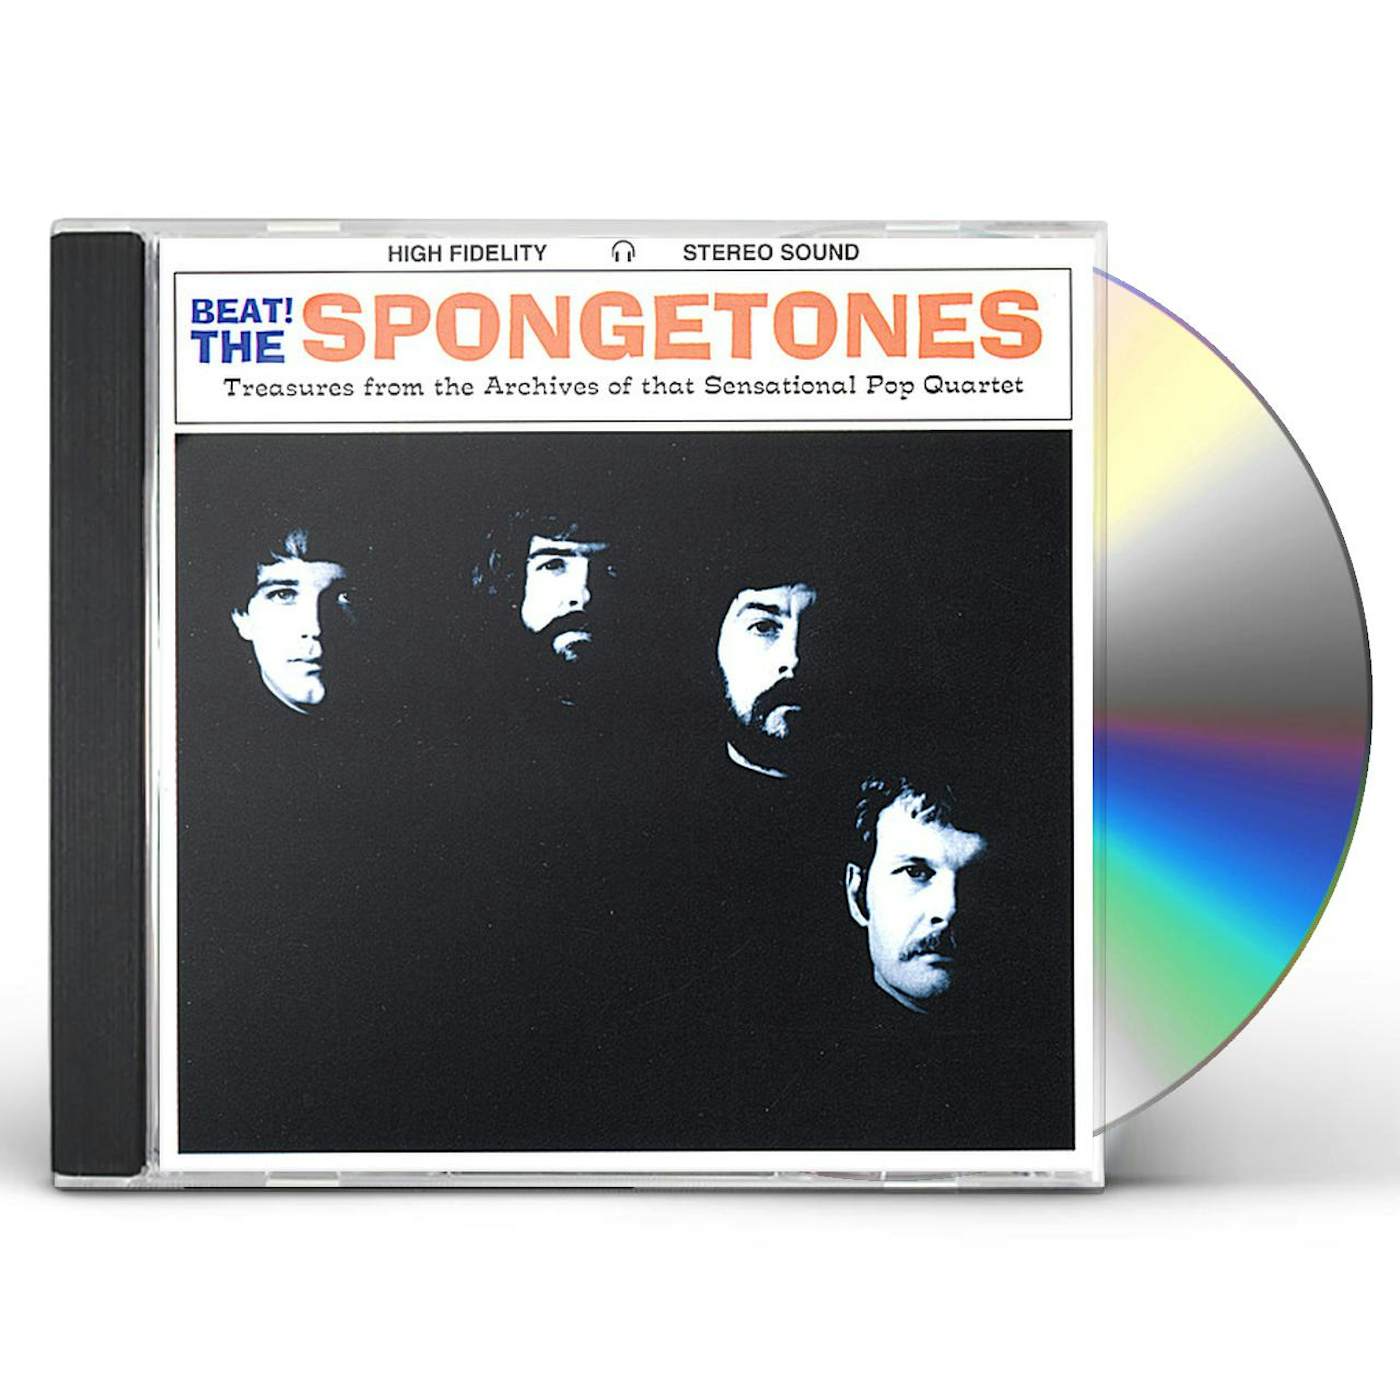 BEATTHE SPONGETONES CD